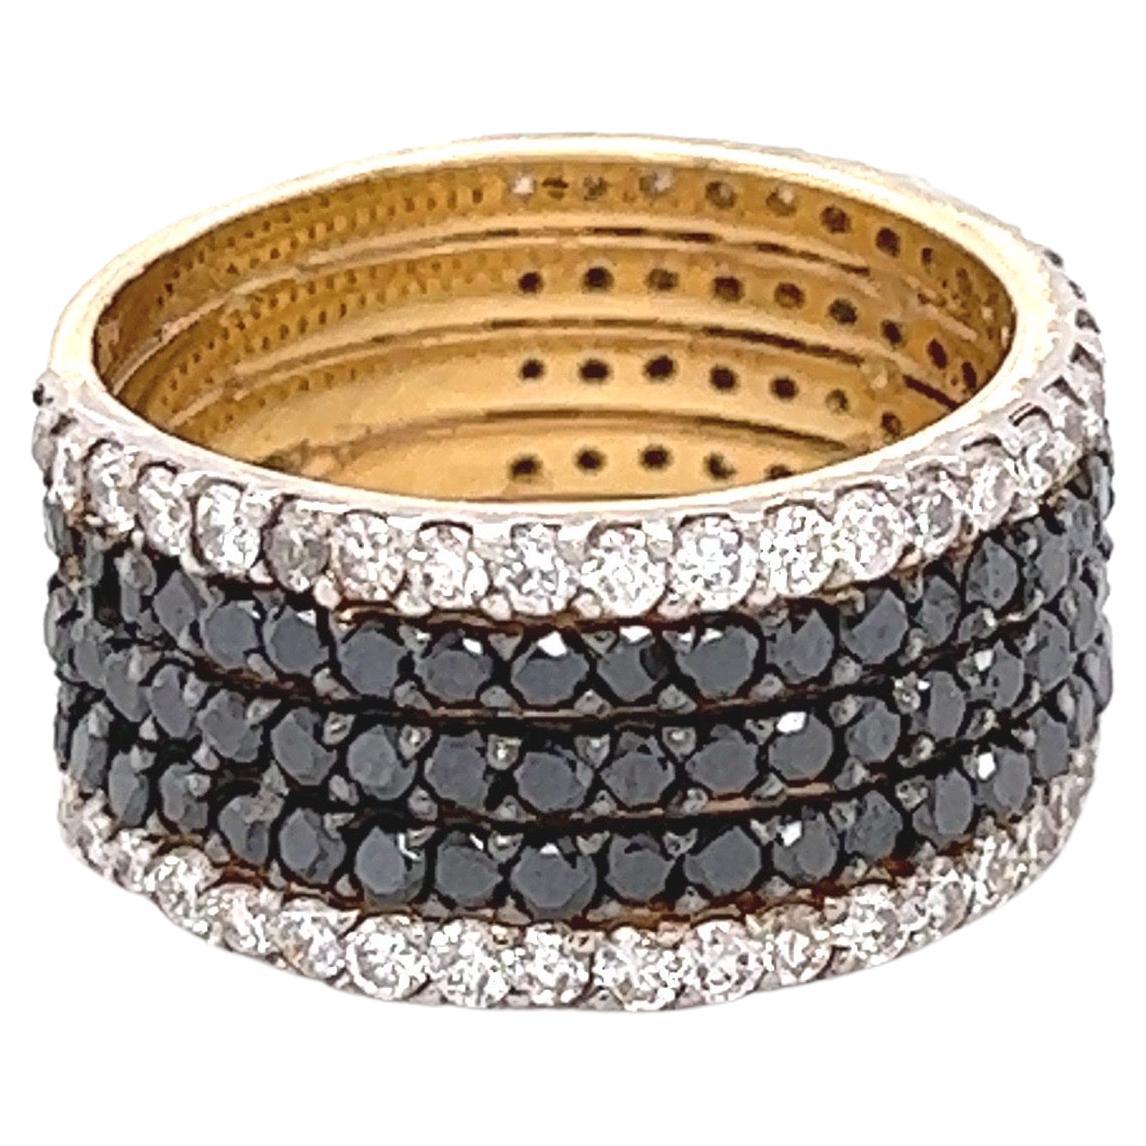 Ce bracelet en diamant noir et blanc est éblouissant et polyvalent ! Can est une bague de mariage ou de fiançailles, une bague de cocktail ou une bague de tous les jours ! 

Il y a 90 diamants noirs de taille ronde qui pèsent 1,80 carats et 60